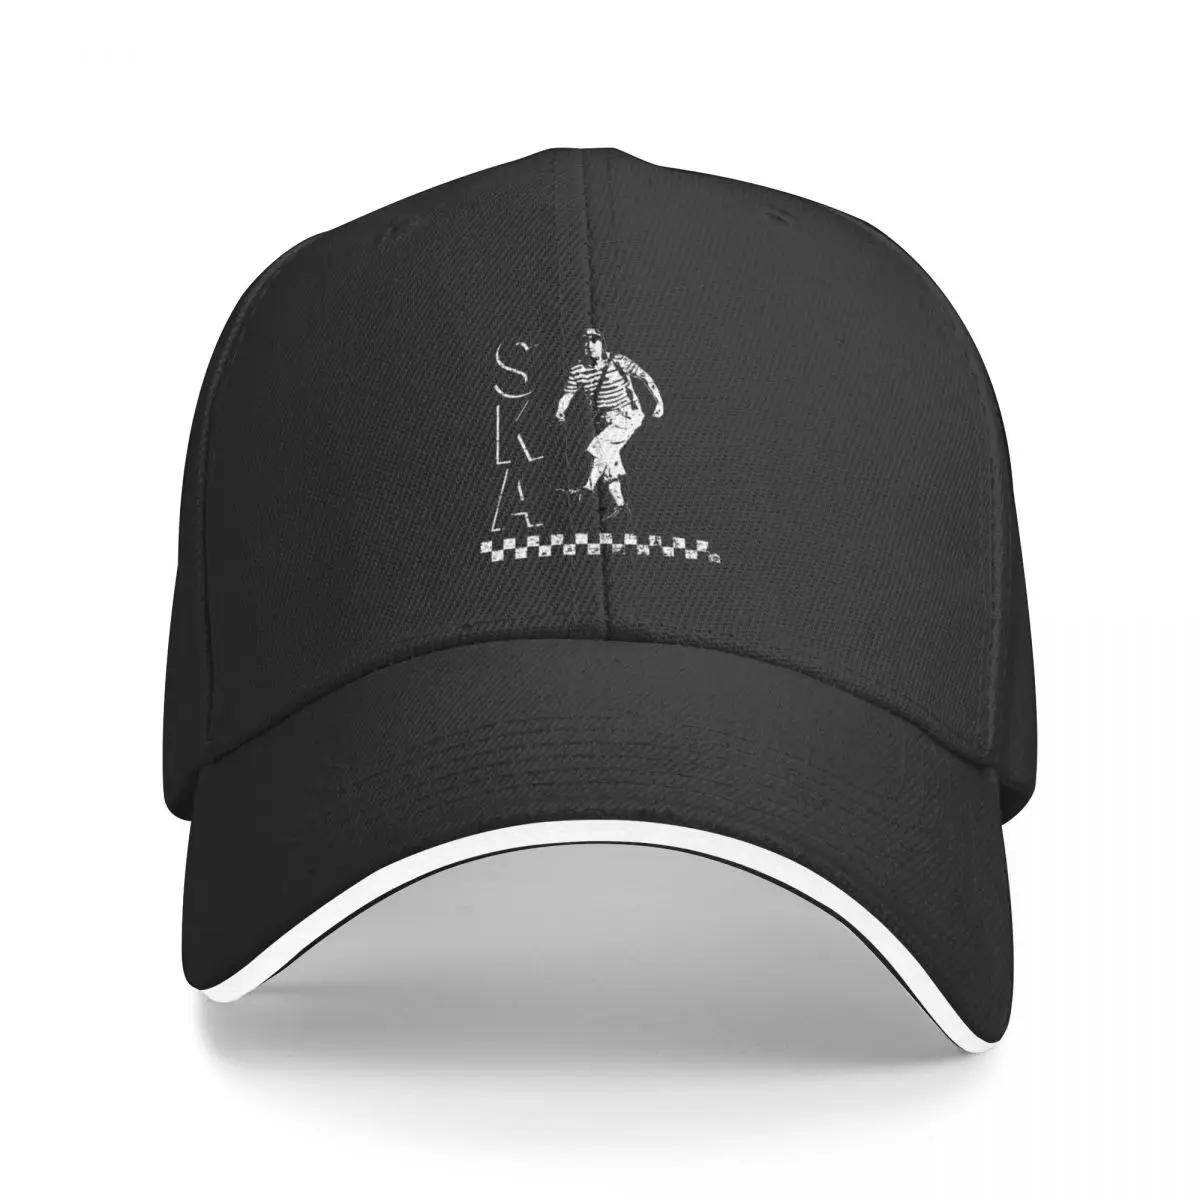 

El Chavo del ochoSKALatin Ska Baseball Cap Fashion Beach Sun Hat For Children Baseball For Men Women's